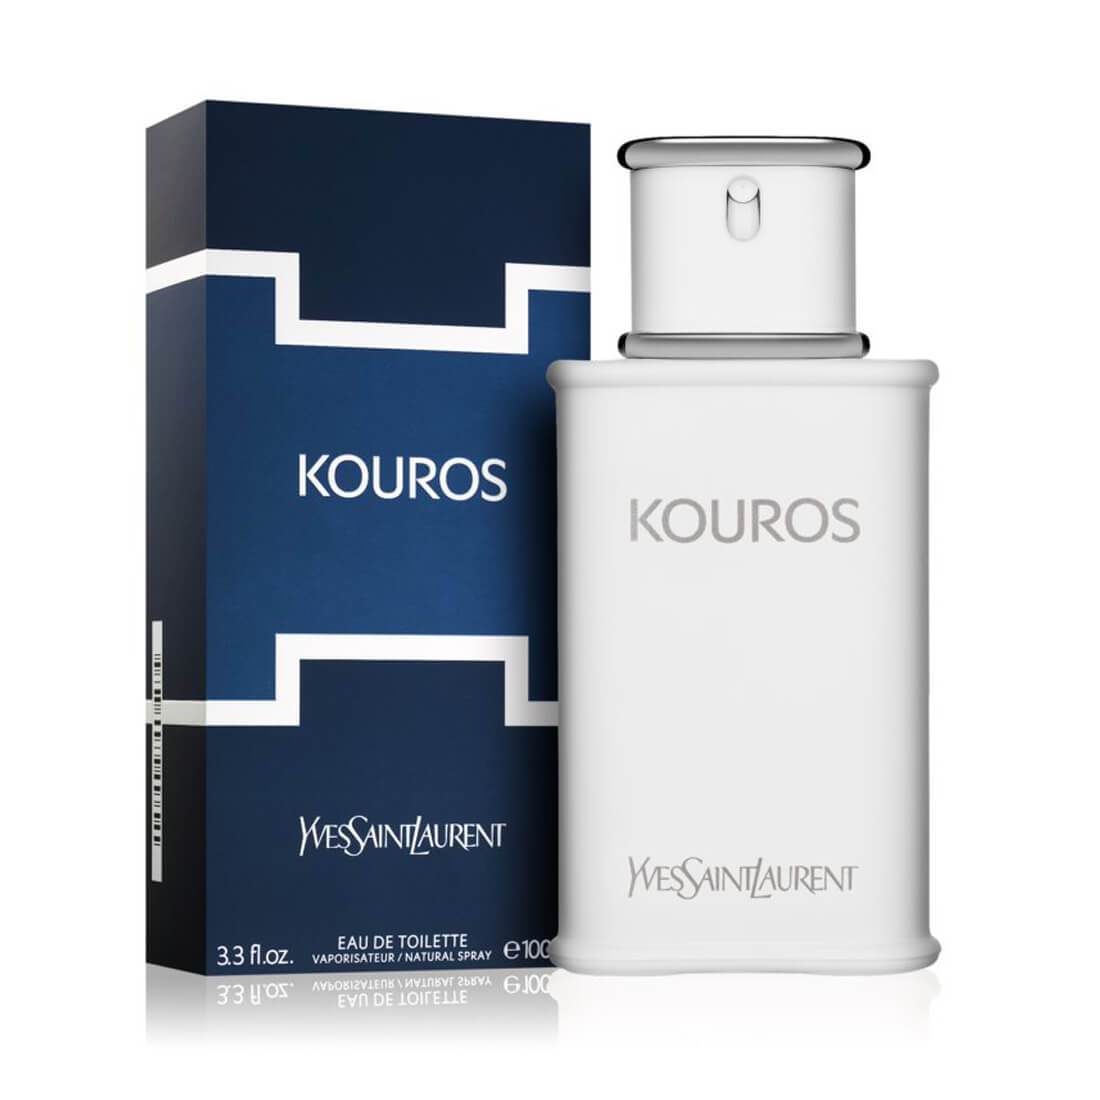 Yves Saint Laurent Kouros EDT Perfume For Men - 100ml